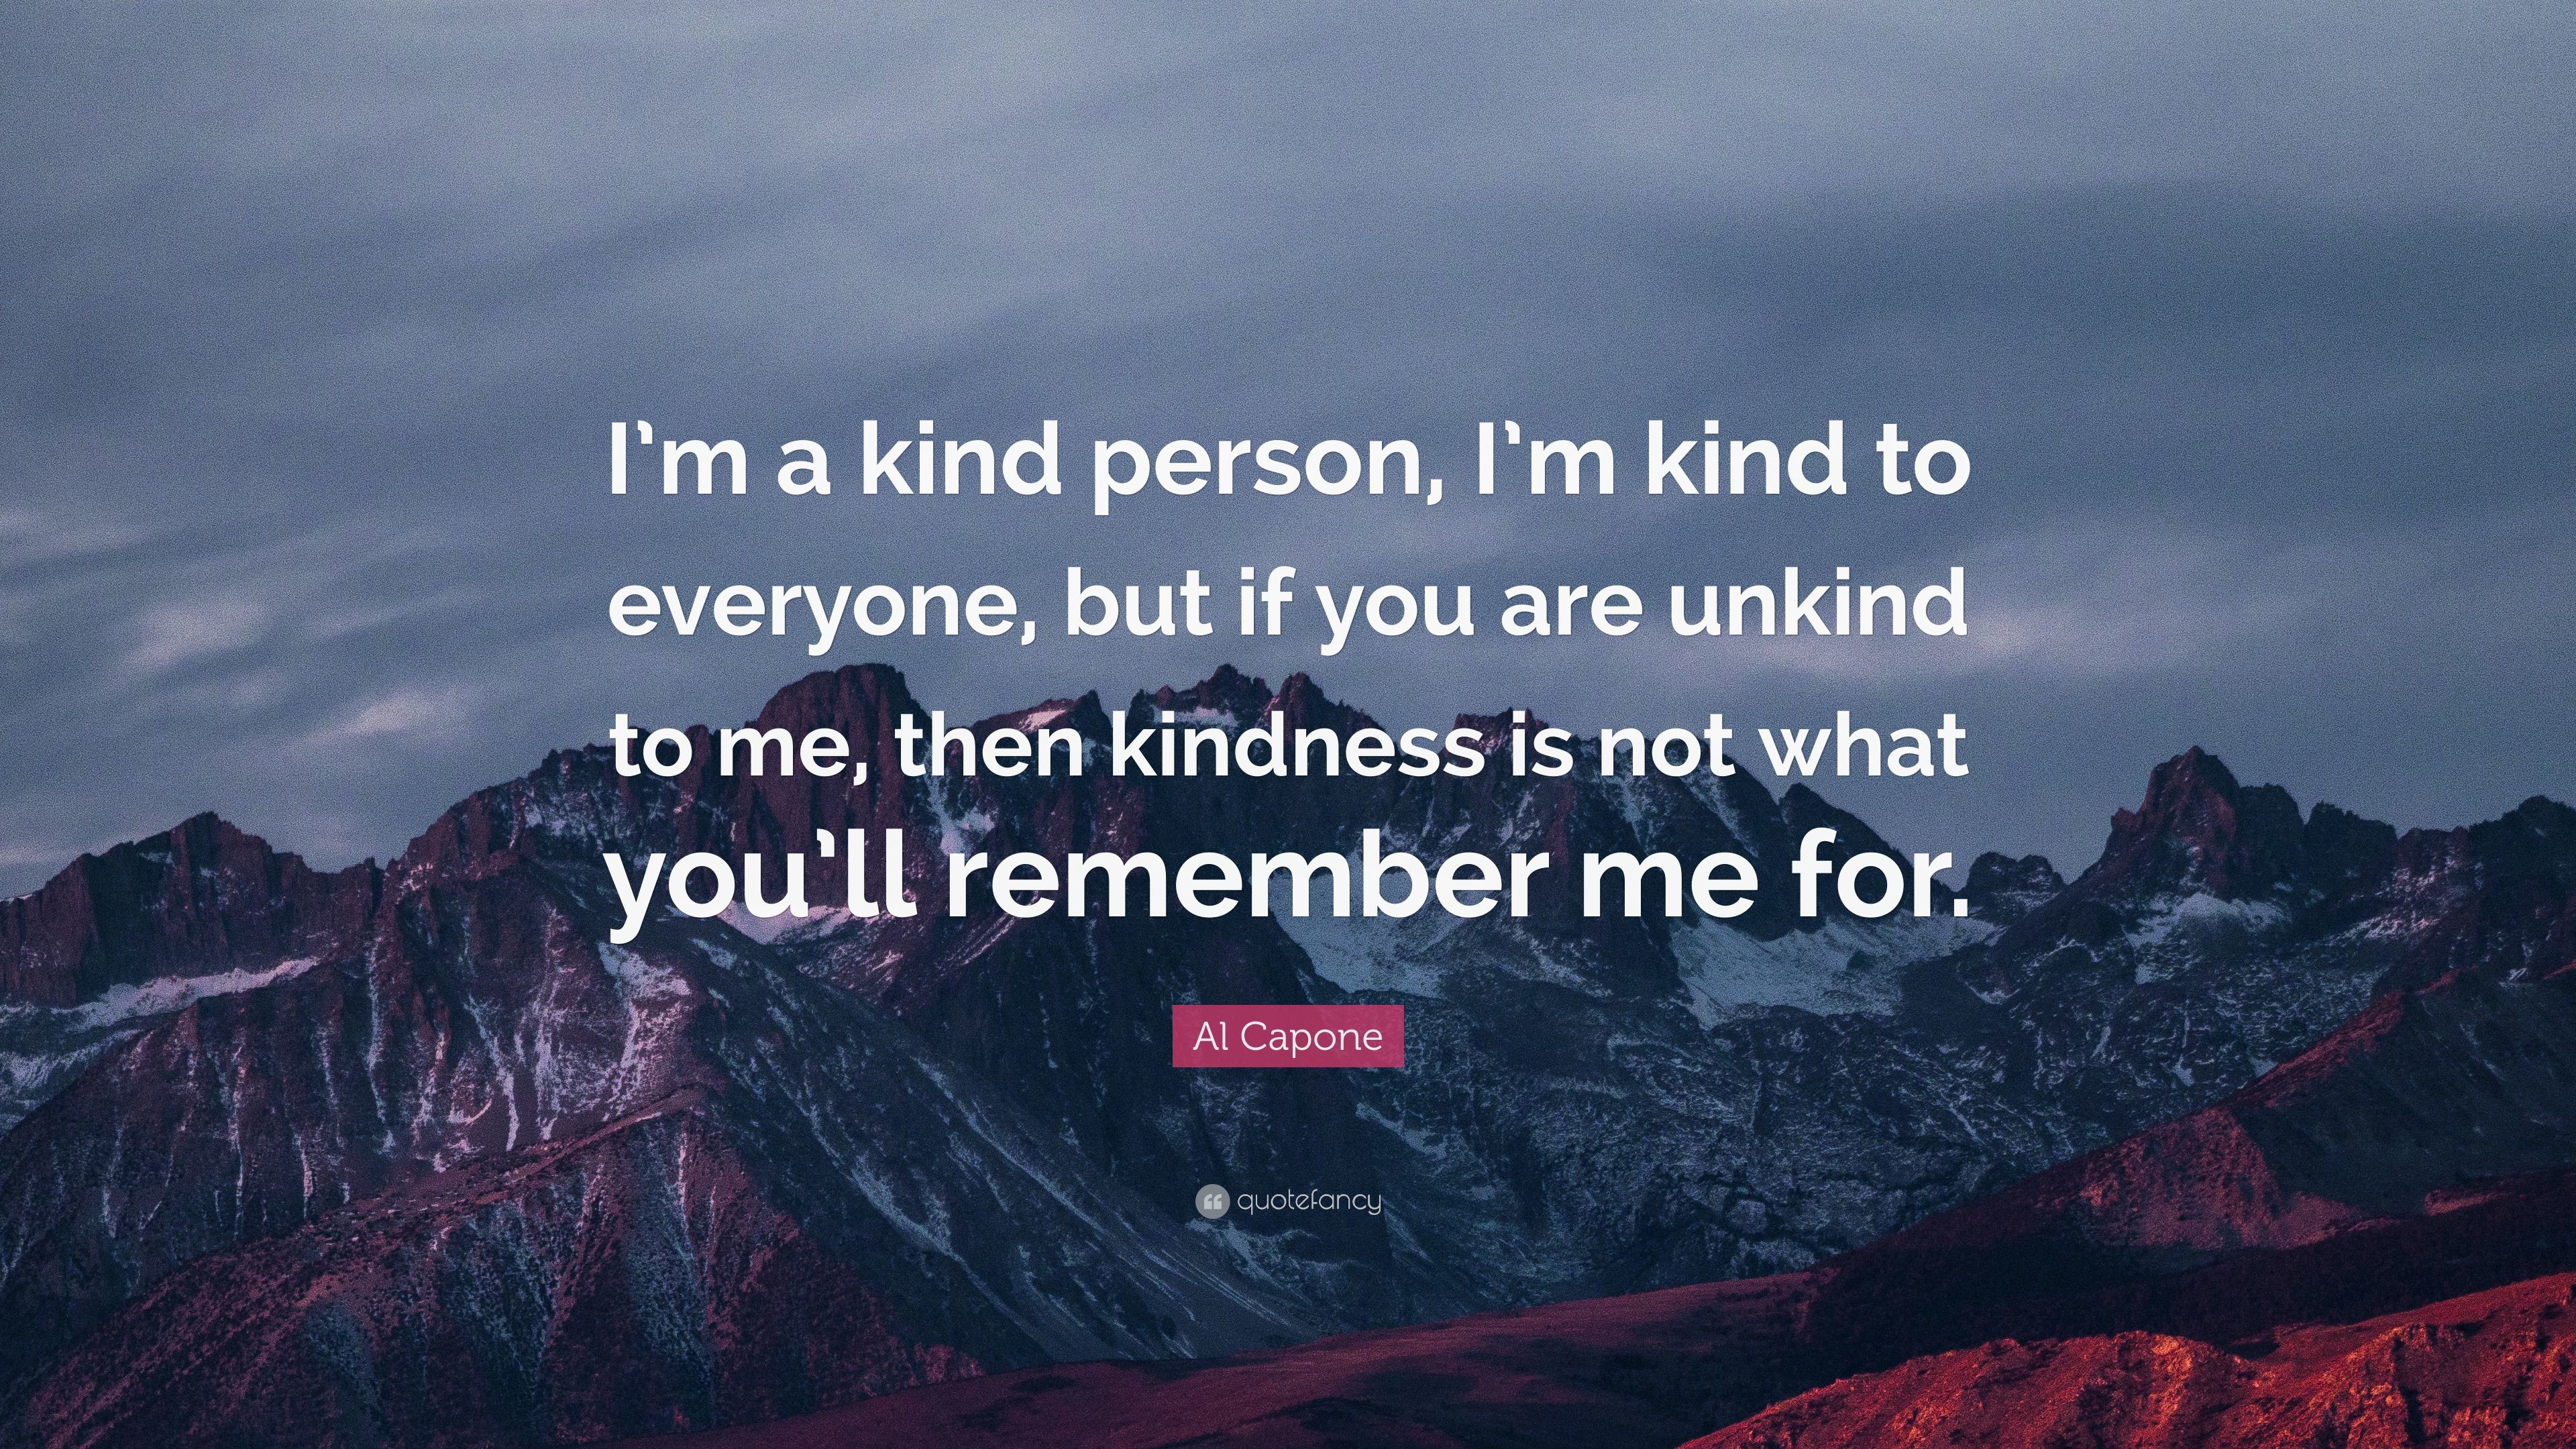 3840x2160 Al Capone Quote: “I'm a kind person, I'm kind